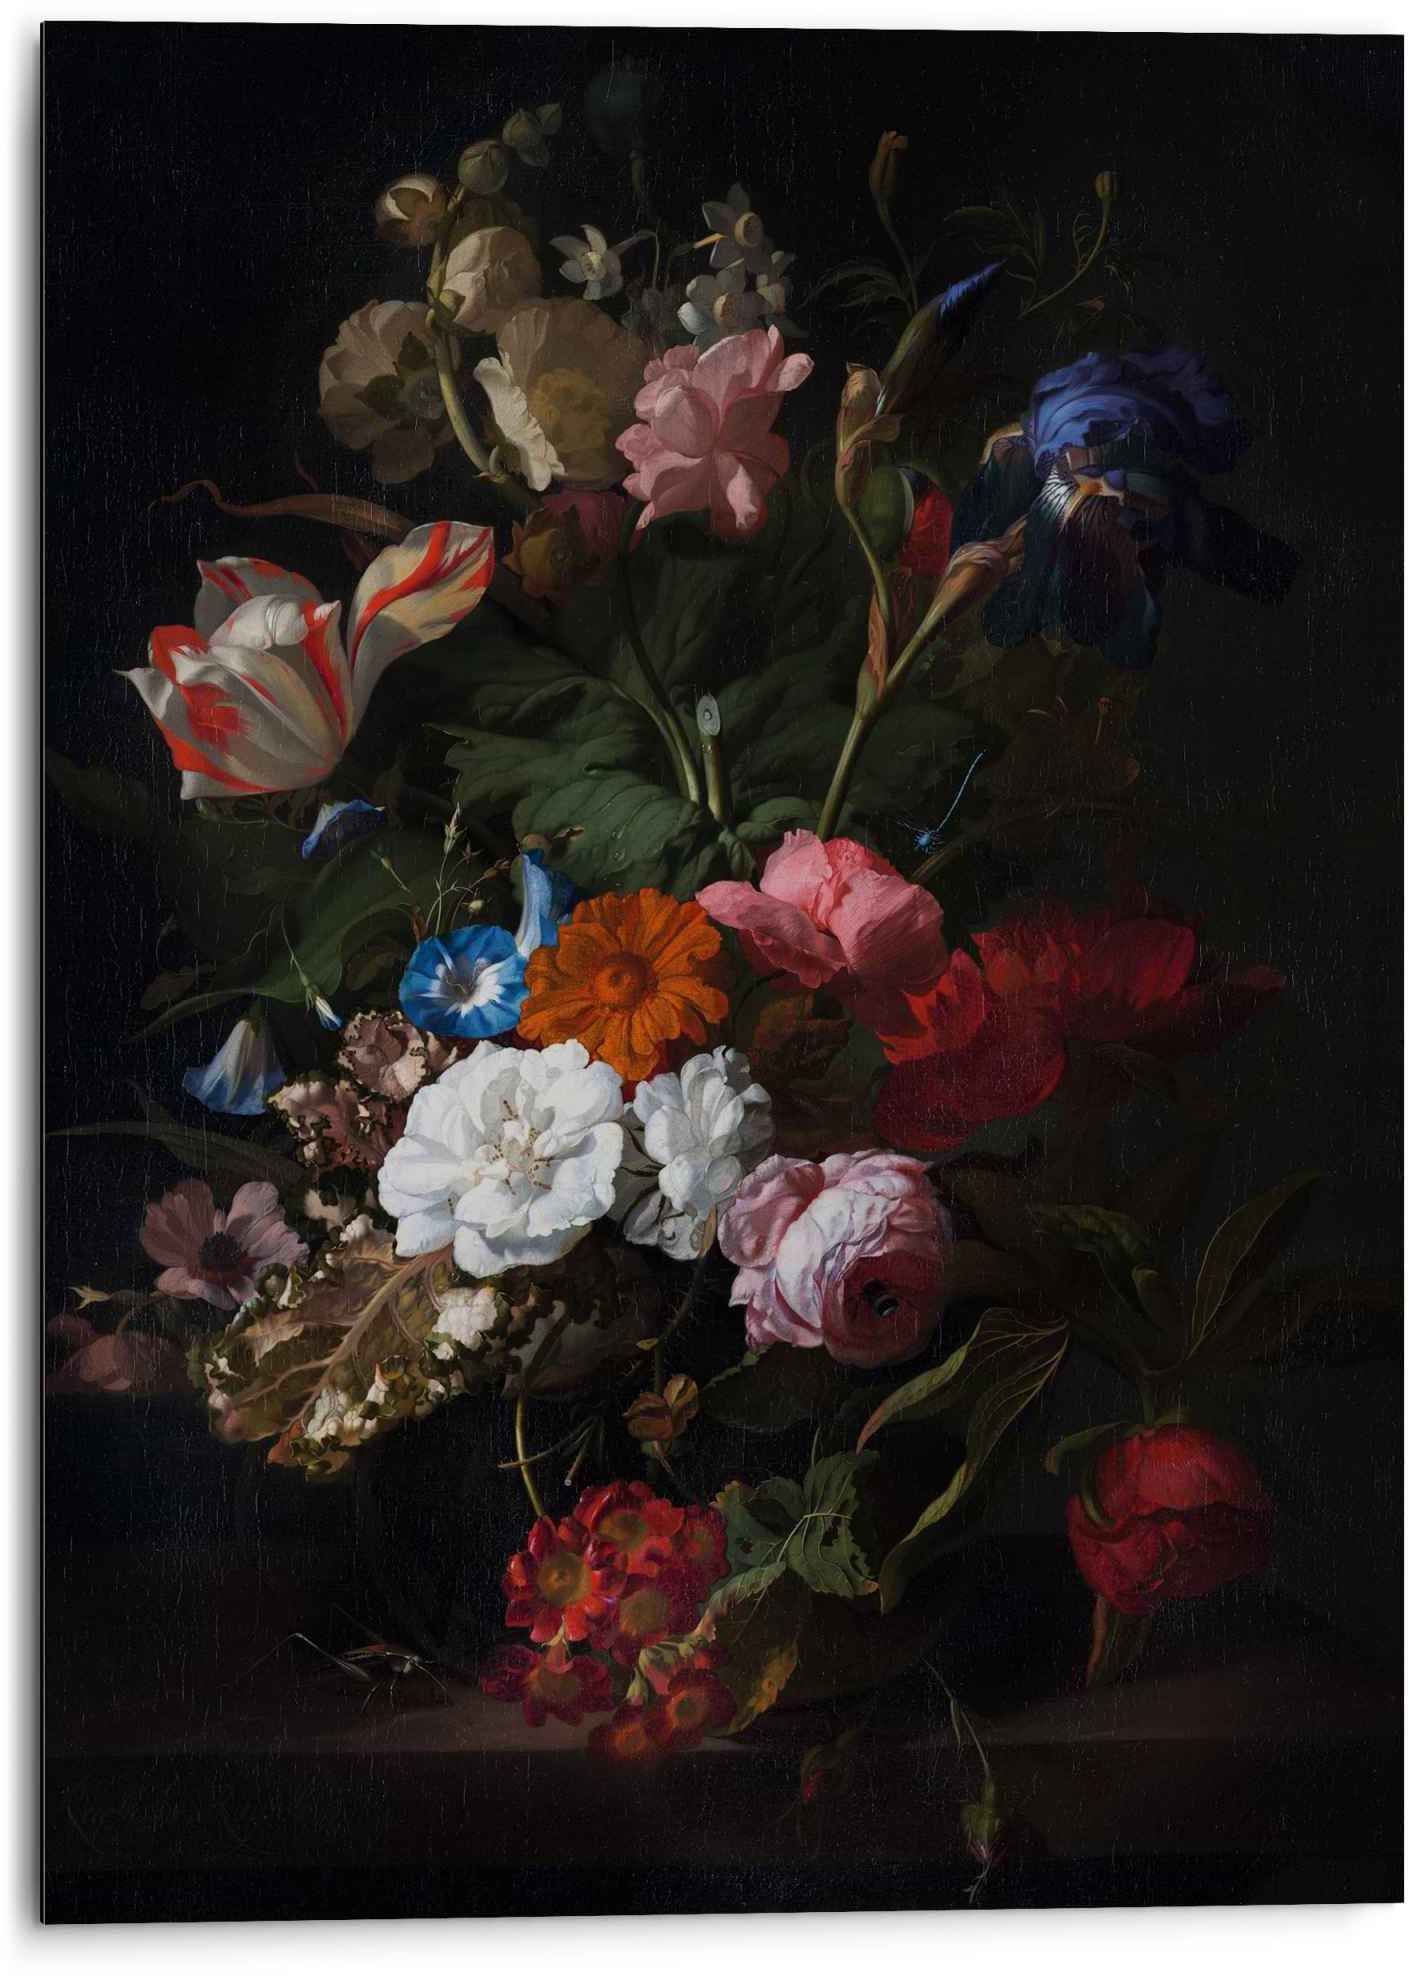 Rechnung Wandbild Blumen Dunkel Meister«, - - St.) Wandbild Mauritshuis auf Blumen, »Aluminium Alte Reinders! bestellen (1